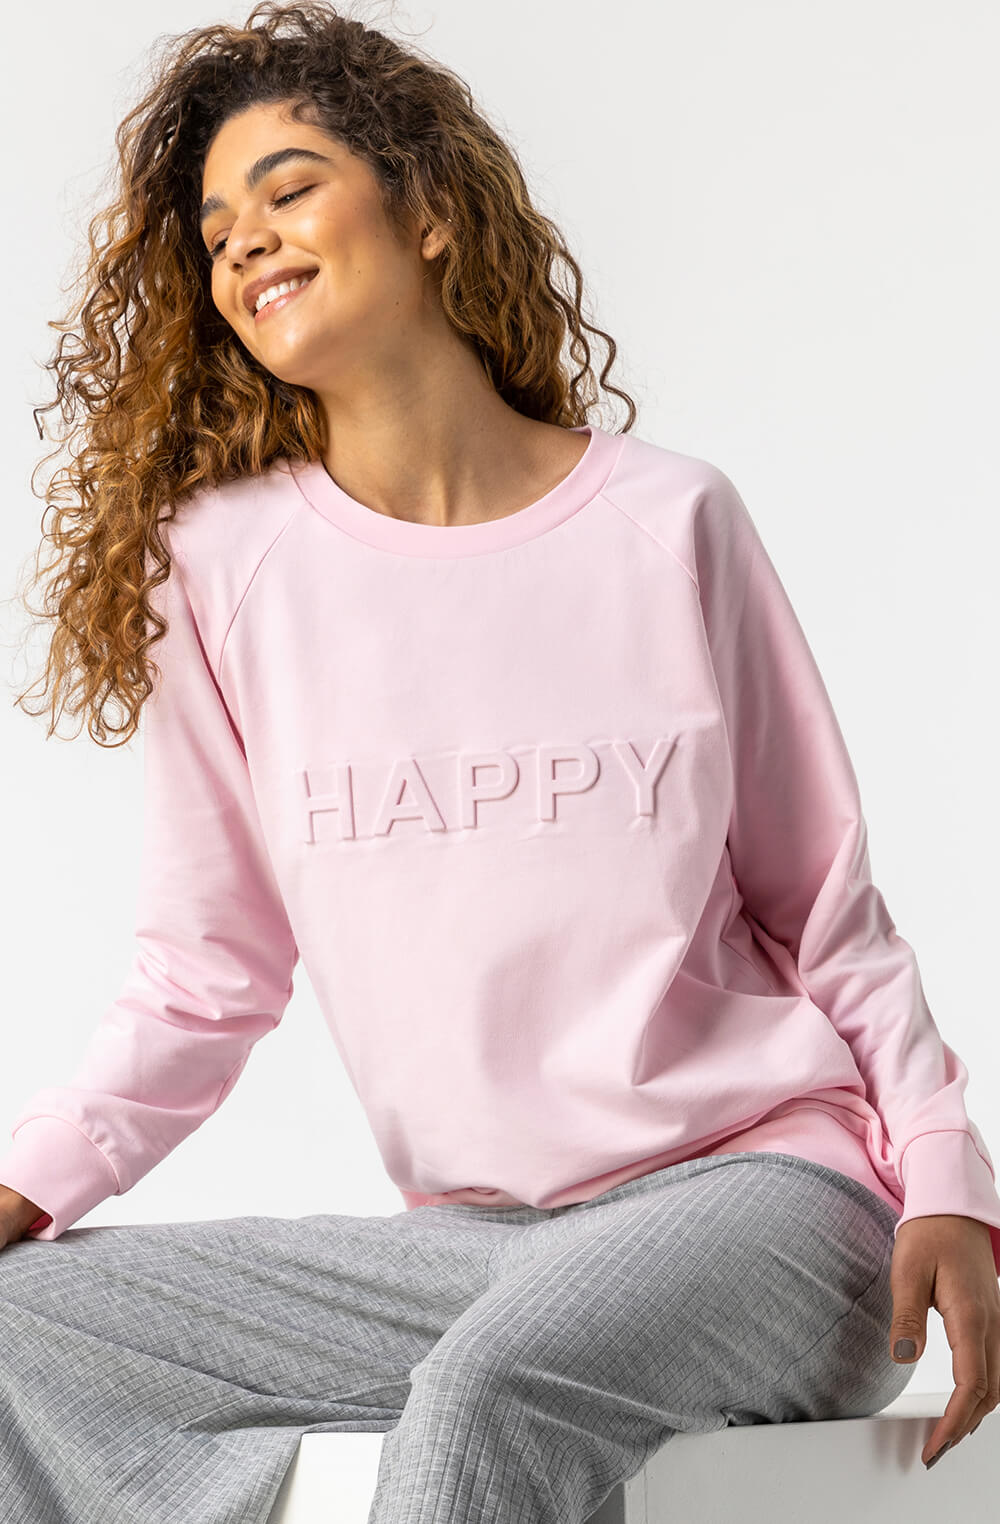 Happy Motif Lounge Sweatshirt in Pink - Roman Originals UK